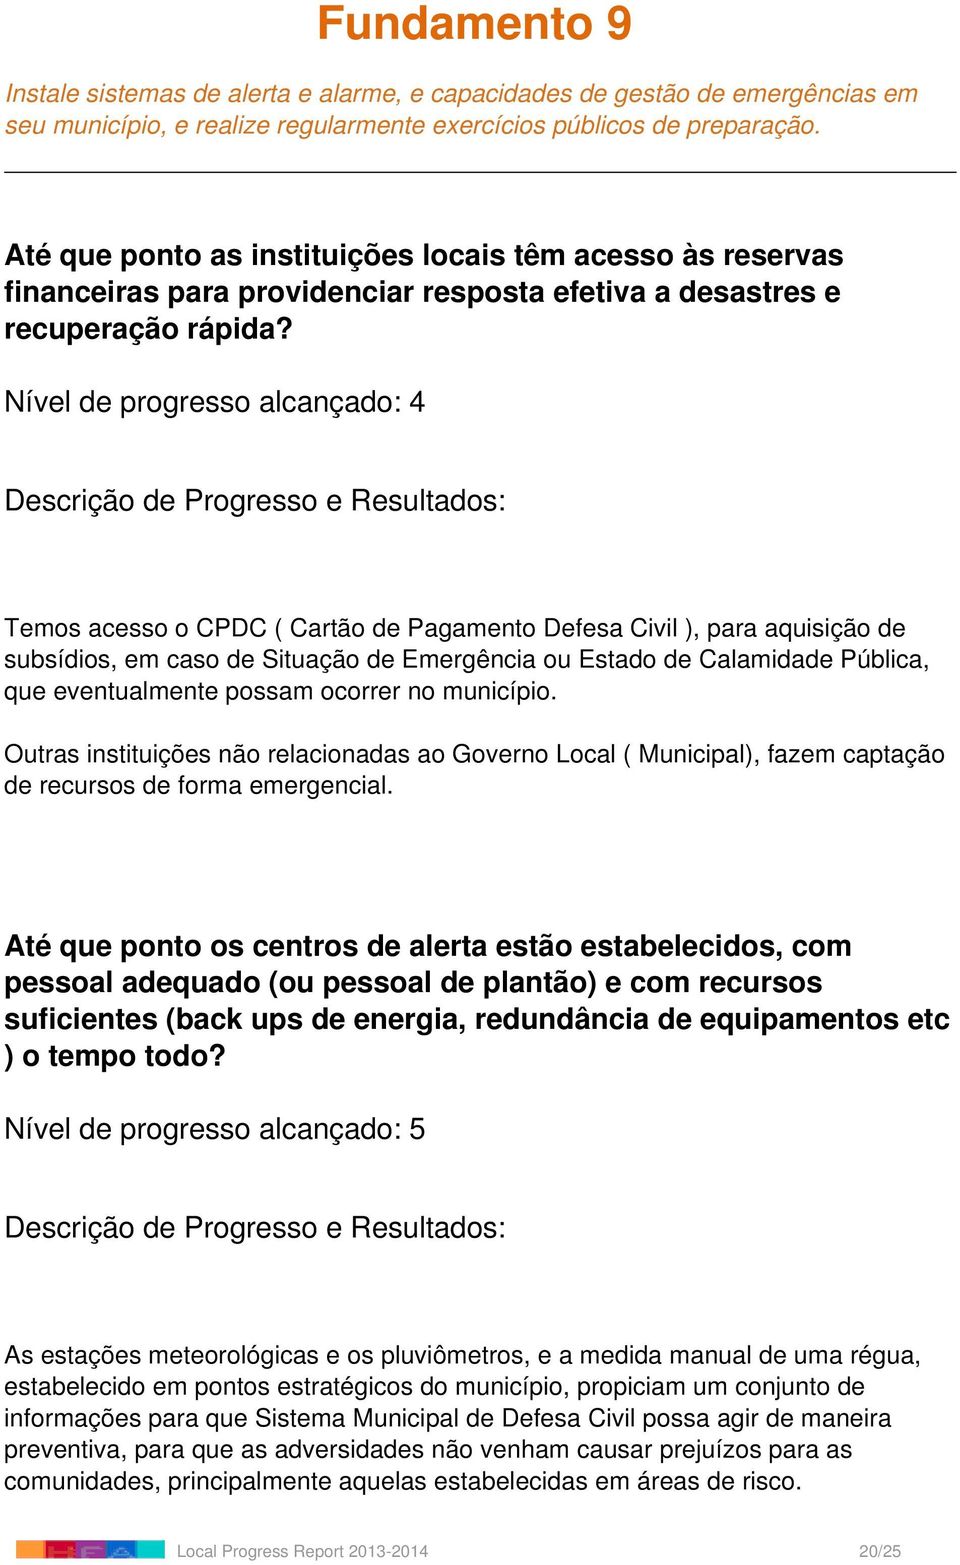 Temos acesso o CPDC ( Cartão de Pagamento Defesa Civil ), para aquisição de subsídios, em caso de Situação de Emergência ou Estado de Calamidade Pública, que eventualmente possam ocorrer no município.